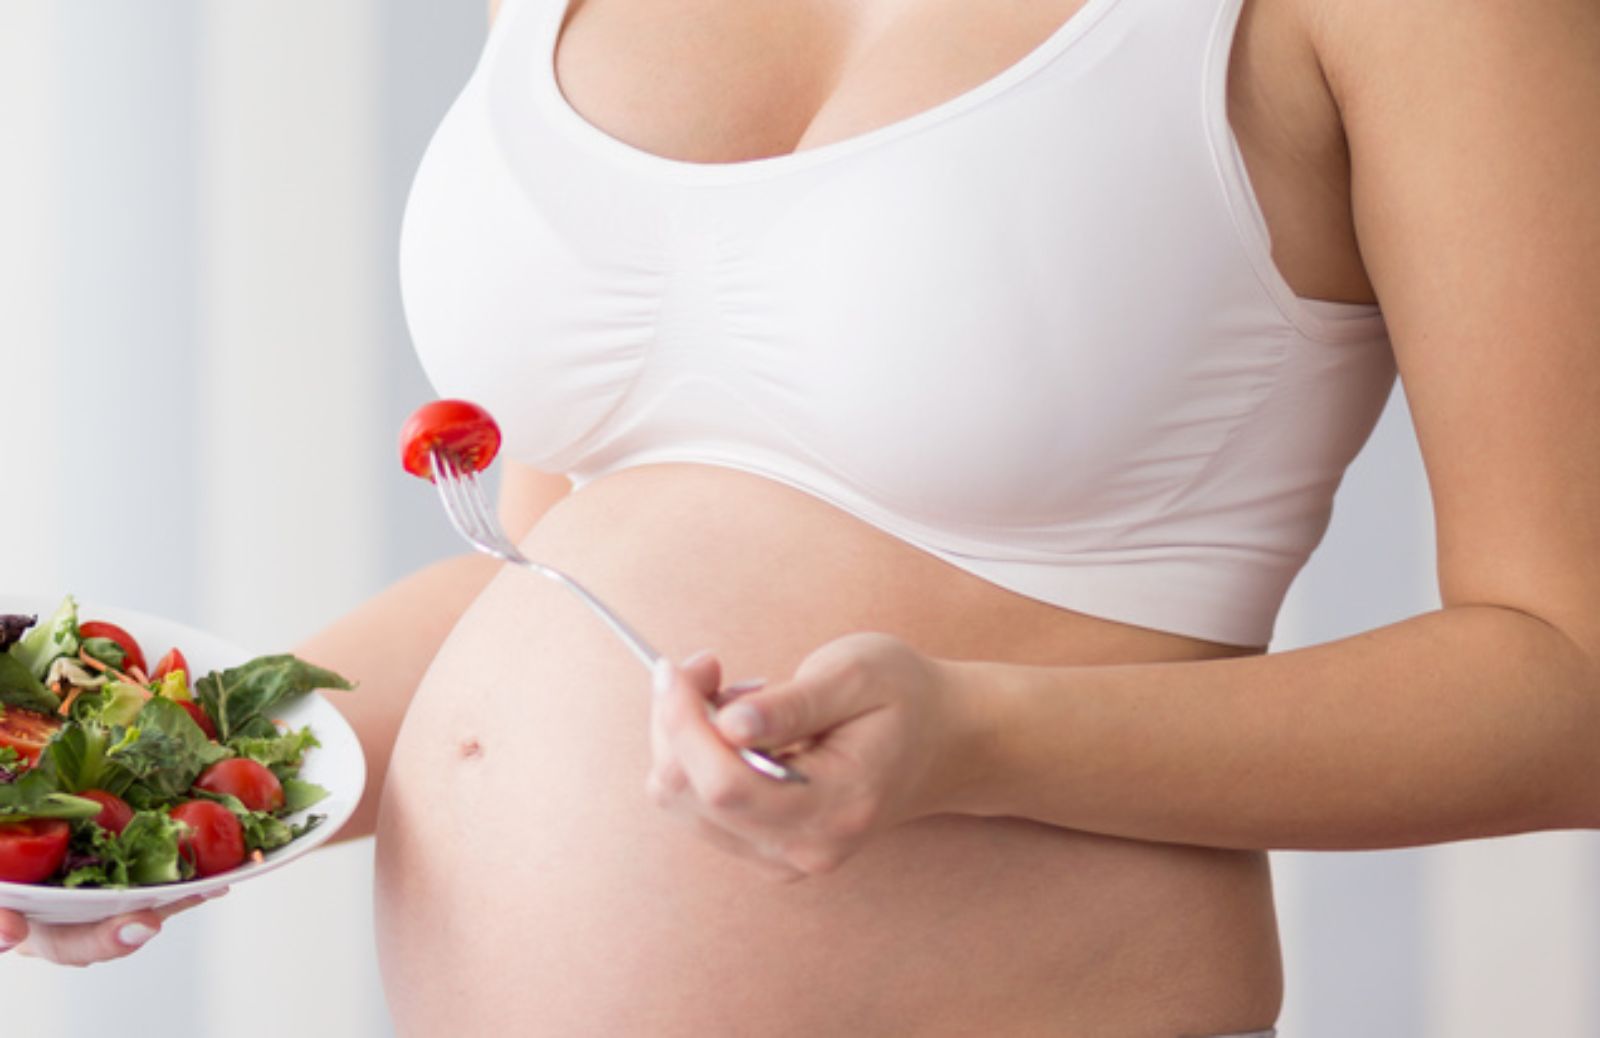 In gravidanza si possono mangiare cibi crudi?